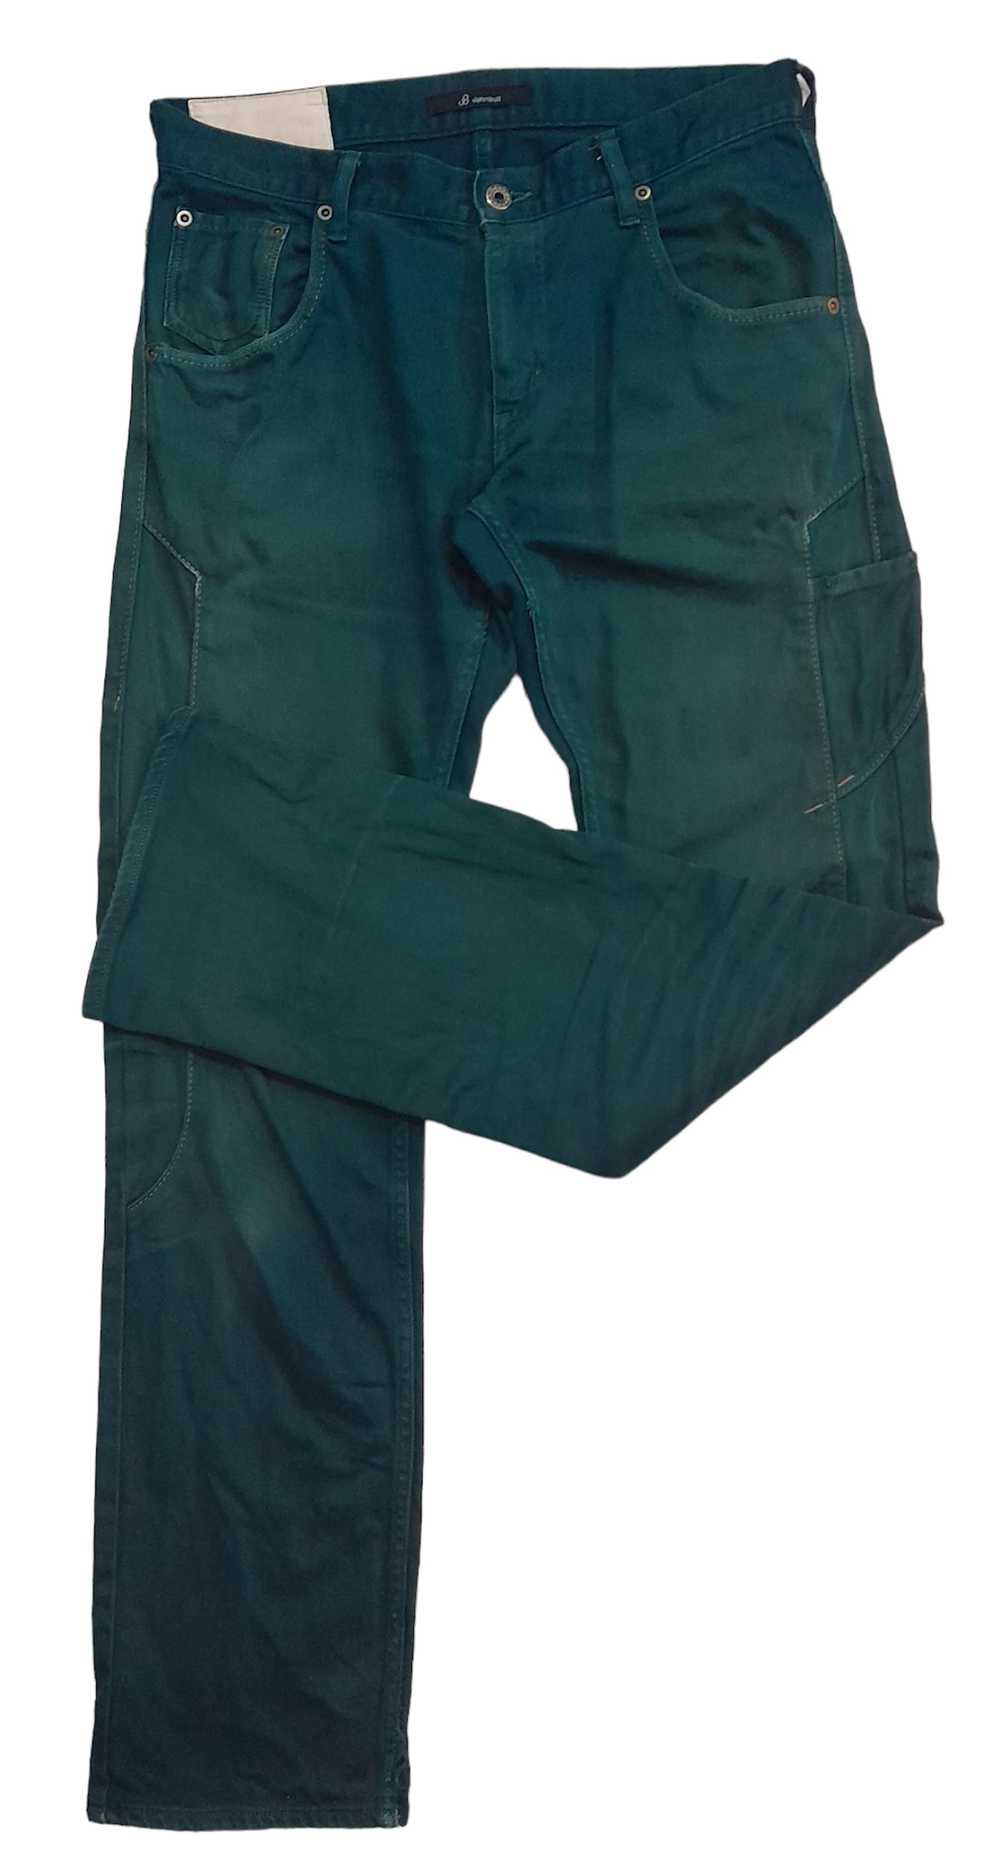 John Bull Johnbull casual pants (S8) - image 3